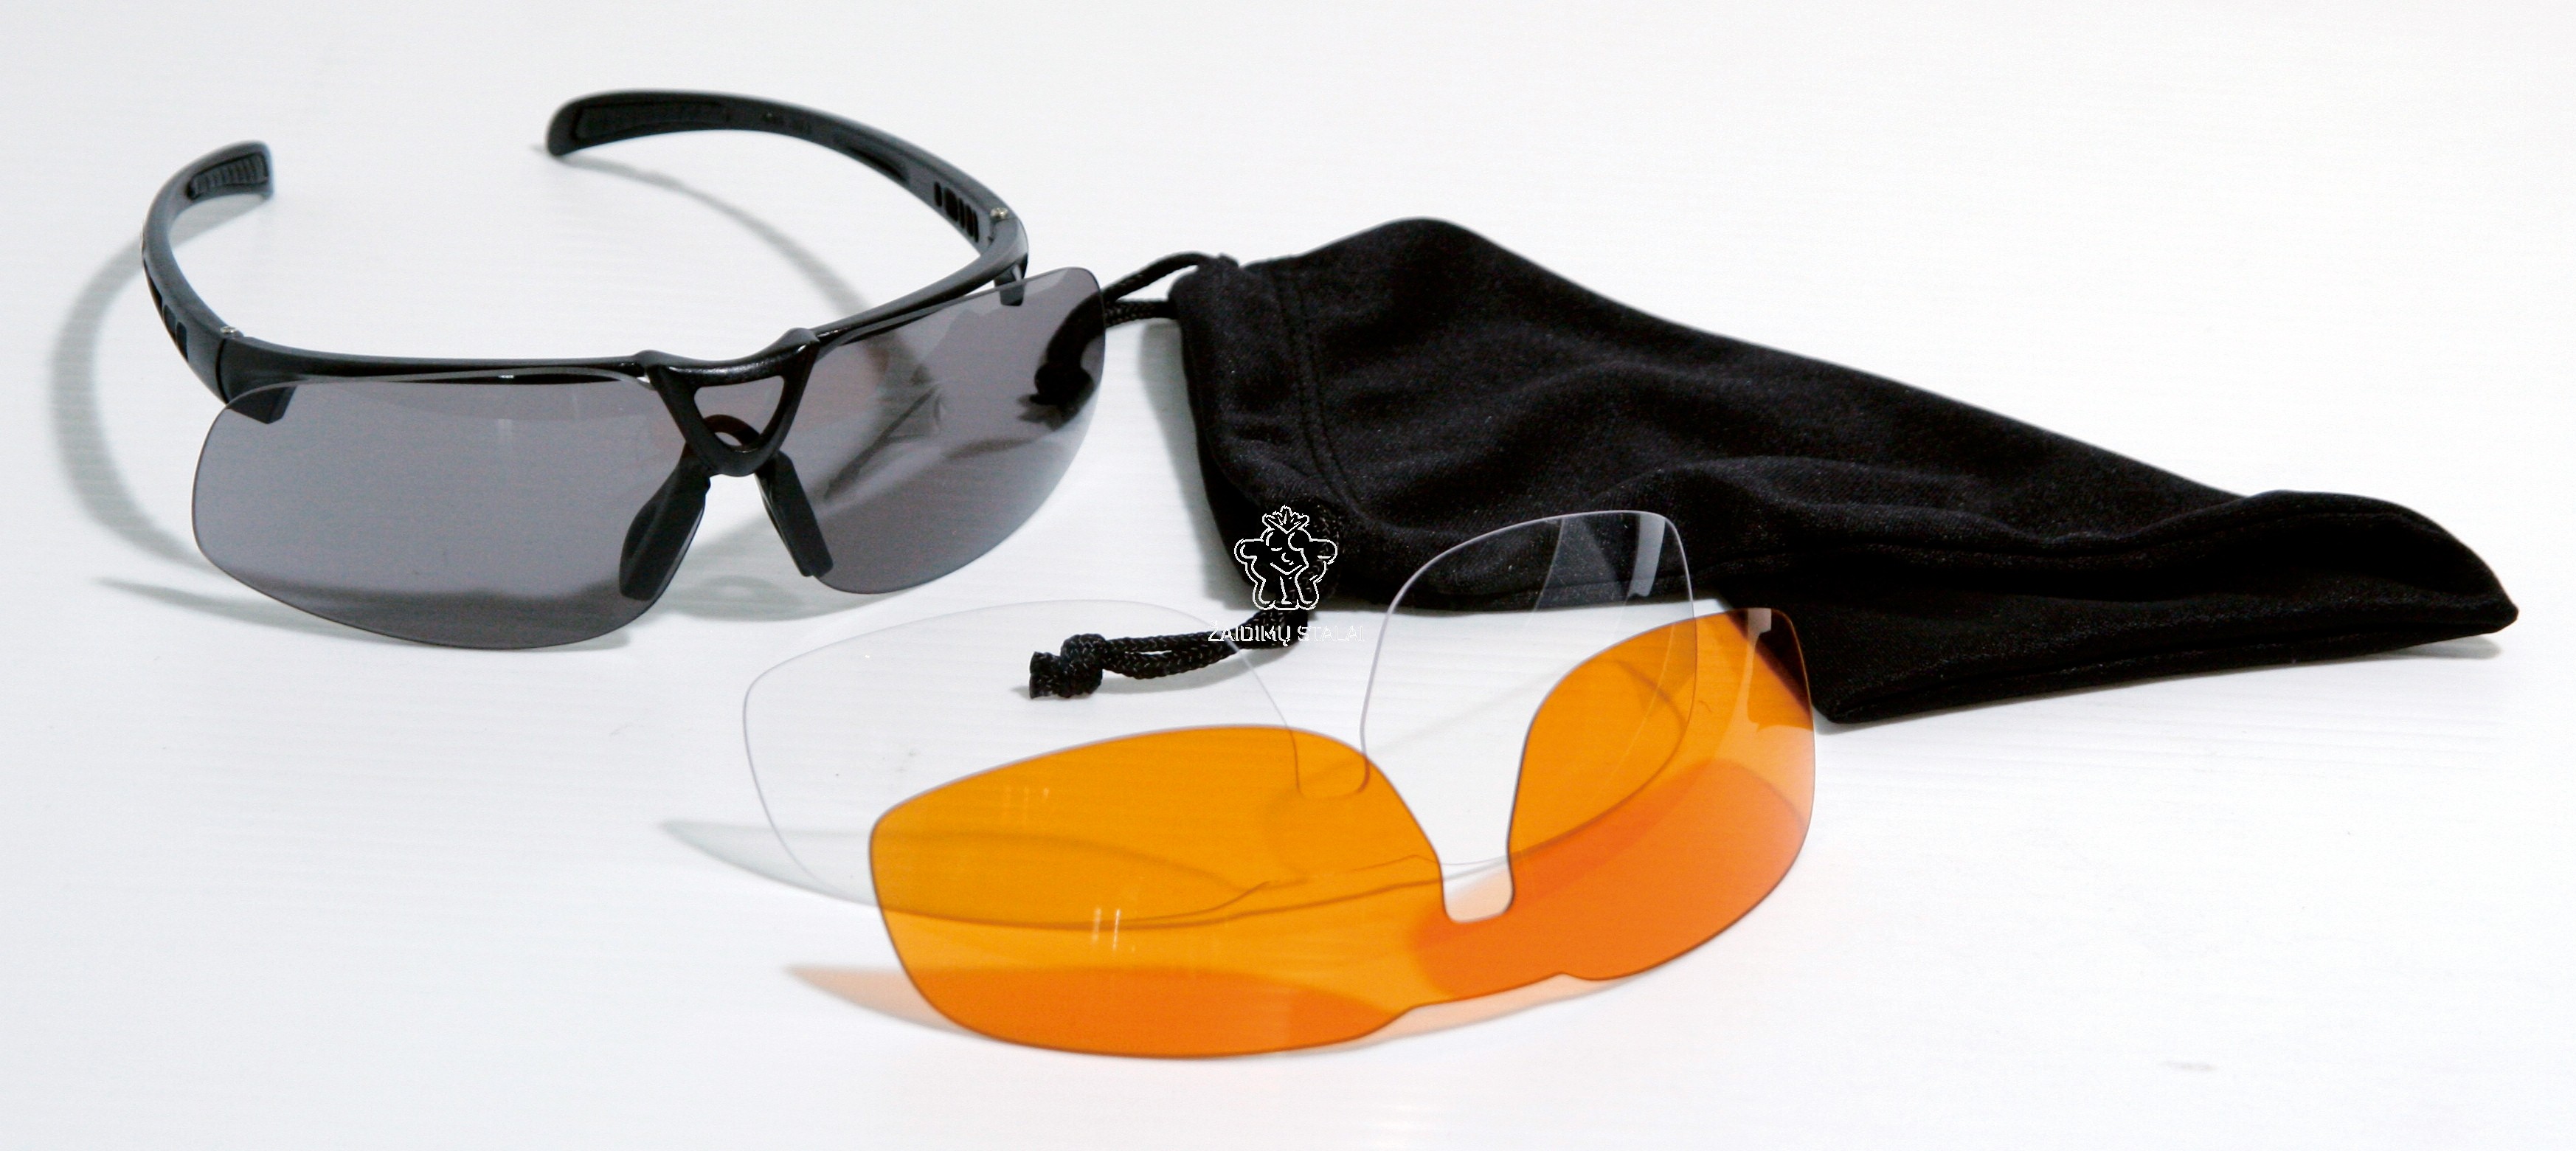 Sportavimo akiniai PRO su 3 stiklų poromis